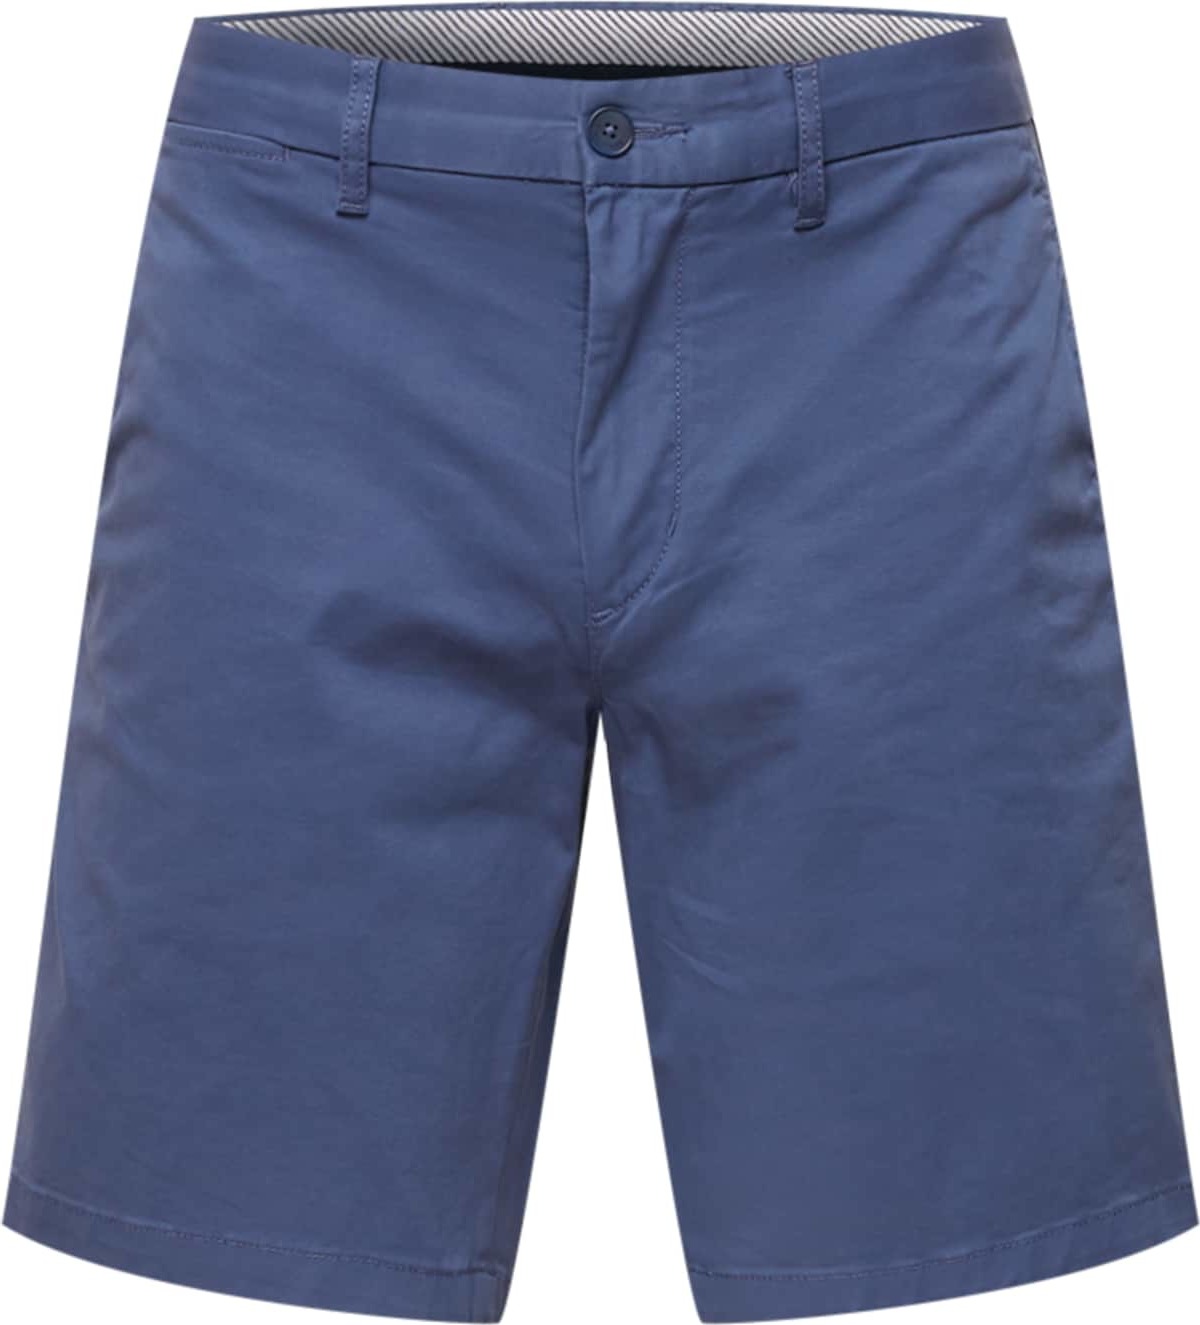 Chino kalhoty 'Brooklyn' Tommy Hilfiger enciánová modrá